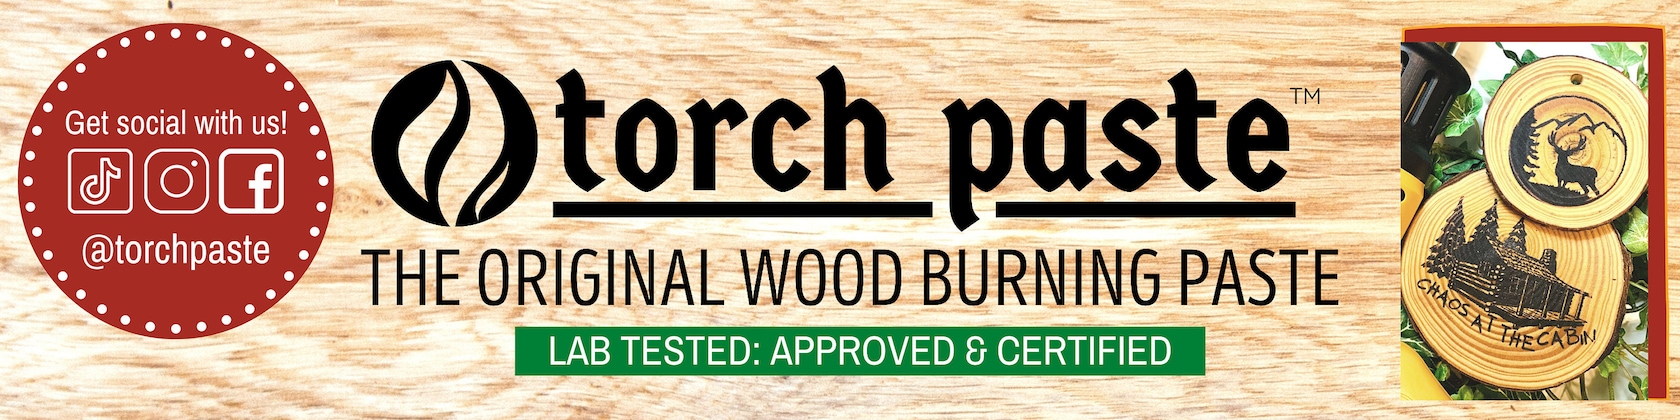 Wood Burning Kits – Torch Paste